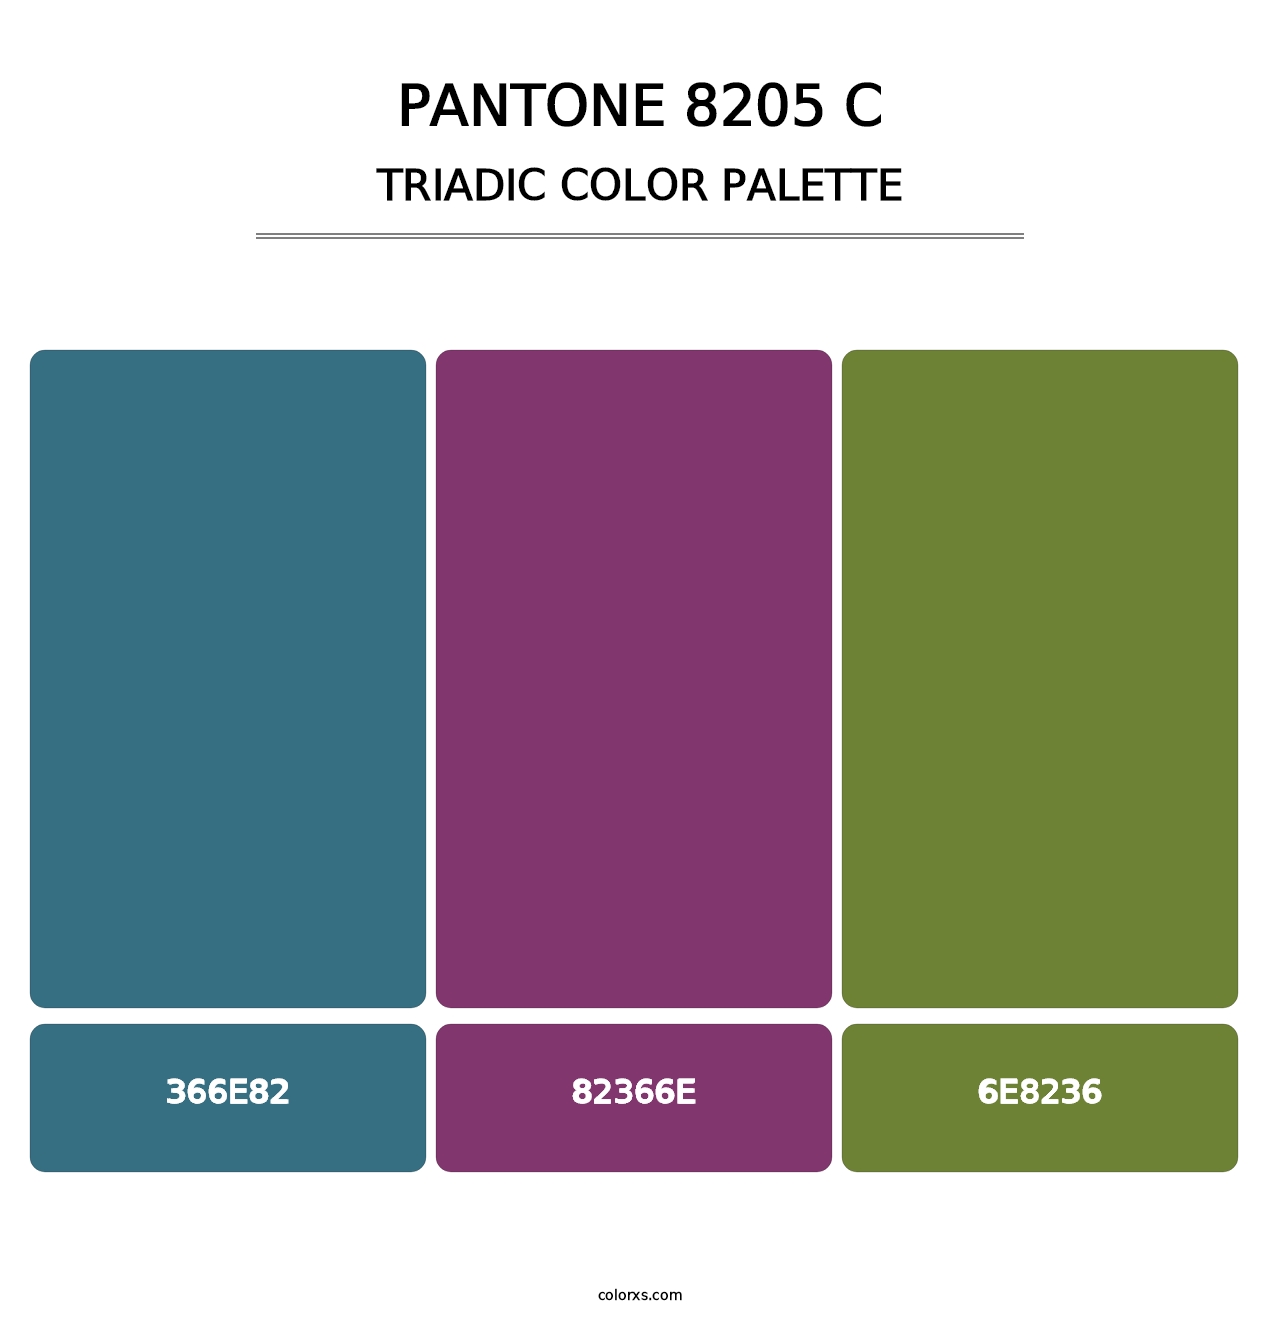 PANTONE 8205 C - Triadic Color Palette